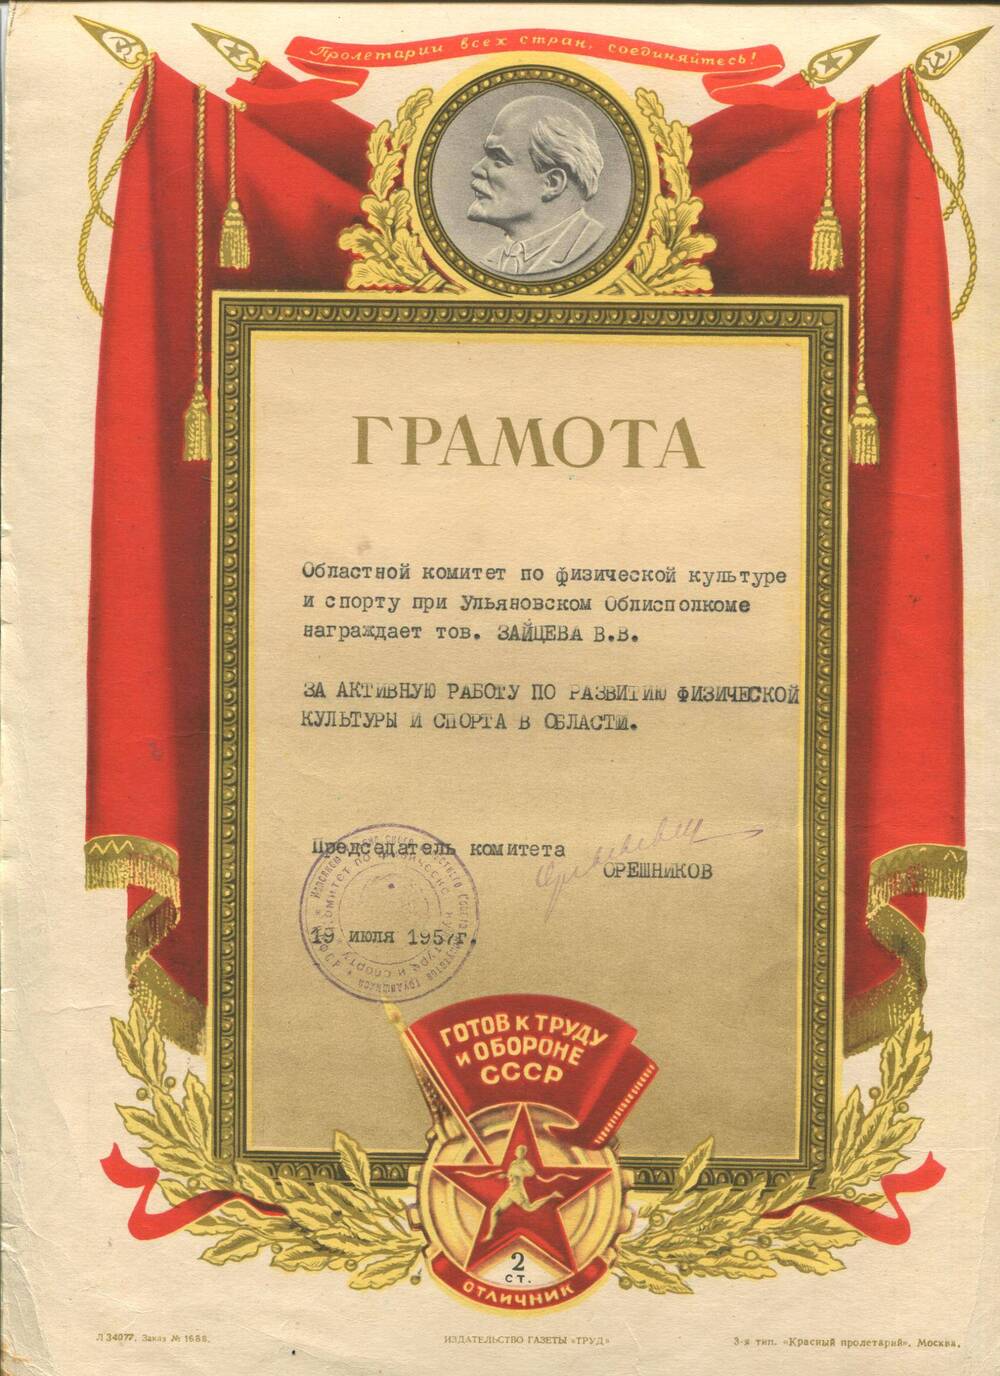 Грамота вручена Зайцеву В.В. за активную работу по развитию физической культуры и спорта в области. 19 июля 1957 г.